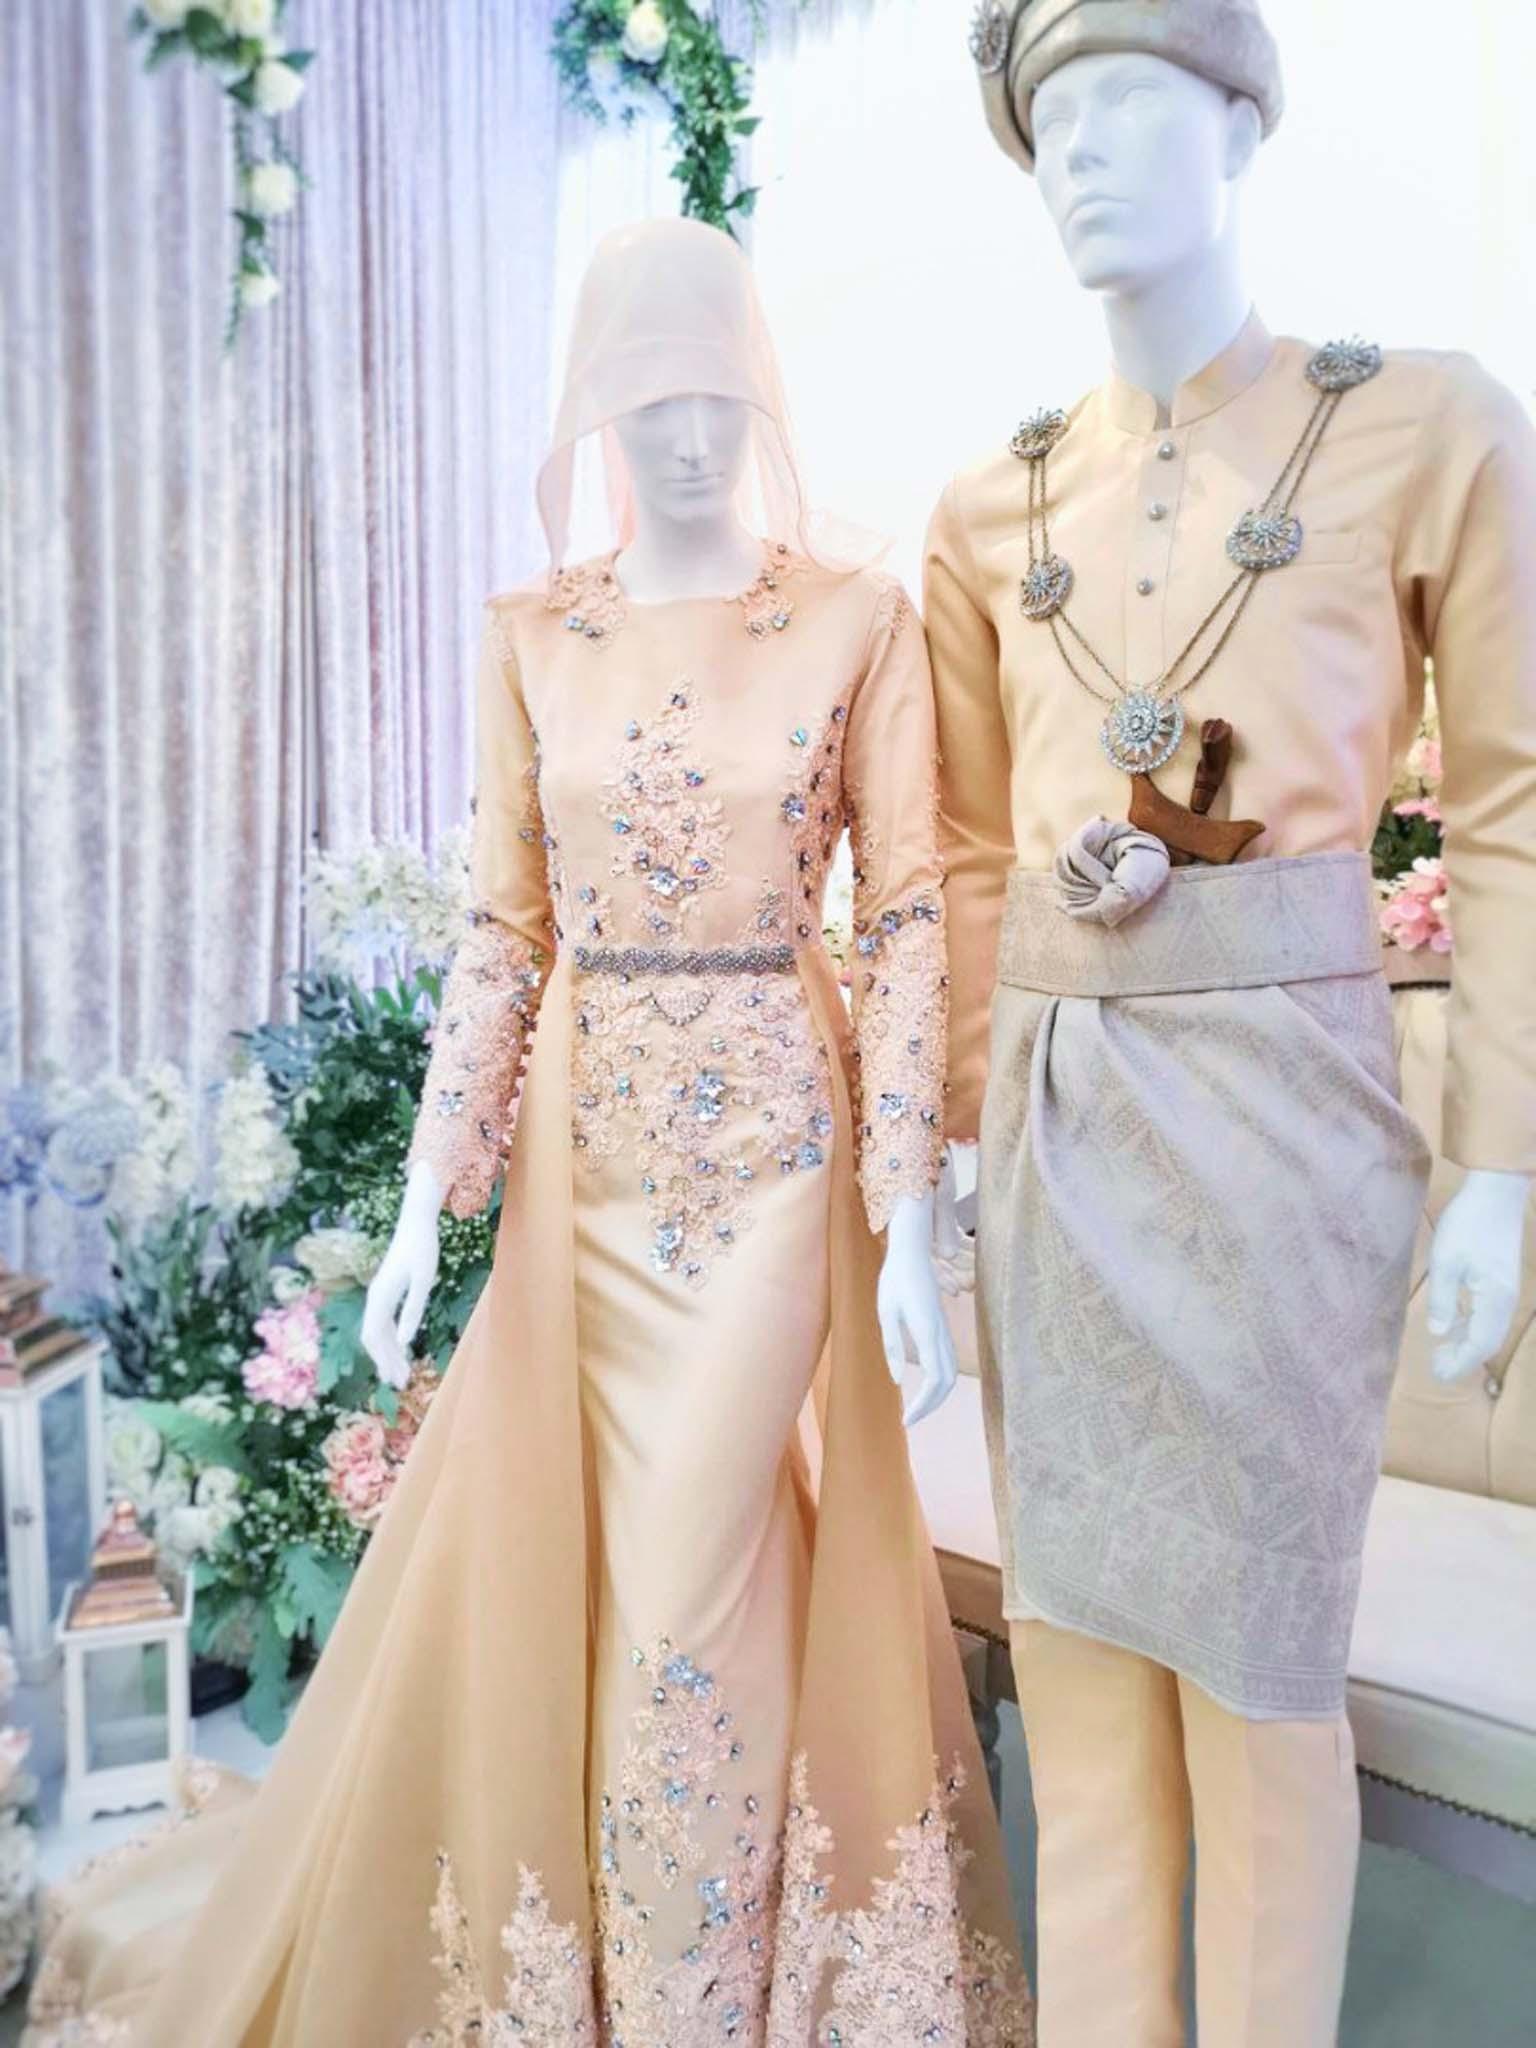 Sewa Baju Pengantin Muslimah Dress with Trail, Duchess Creamy Light Champagne by PP Signature Bridal Boutique-Malay Wedding Dress